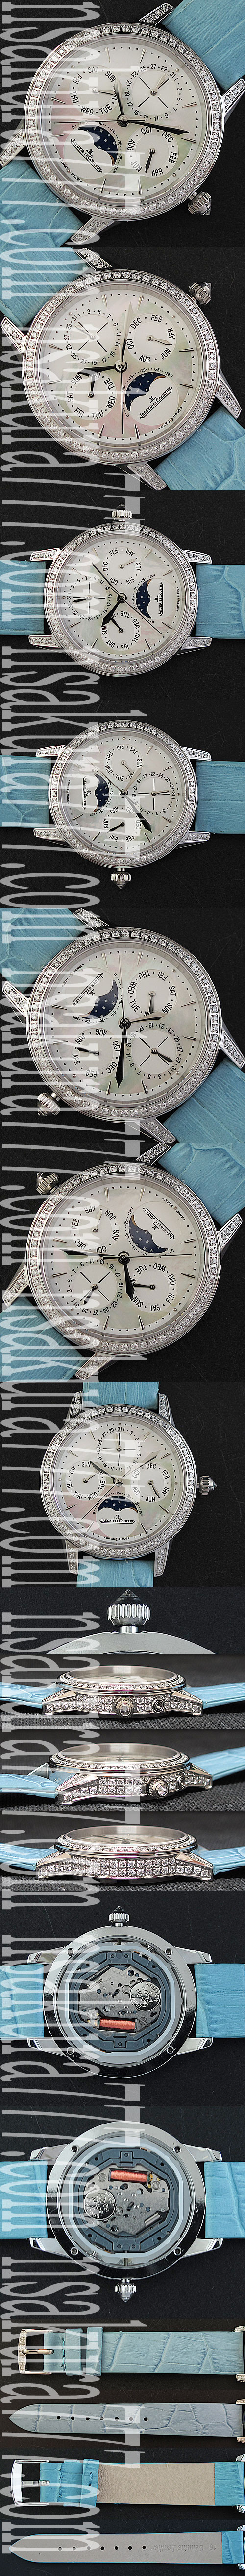 ジャガー·ルクルト腕時計の説明